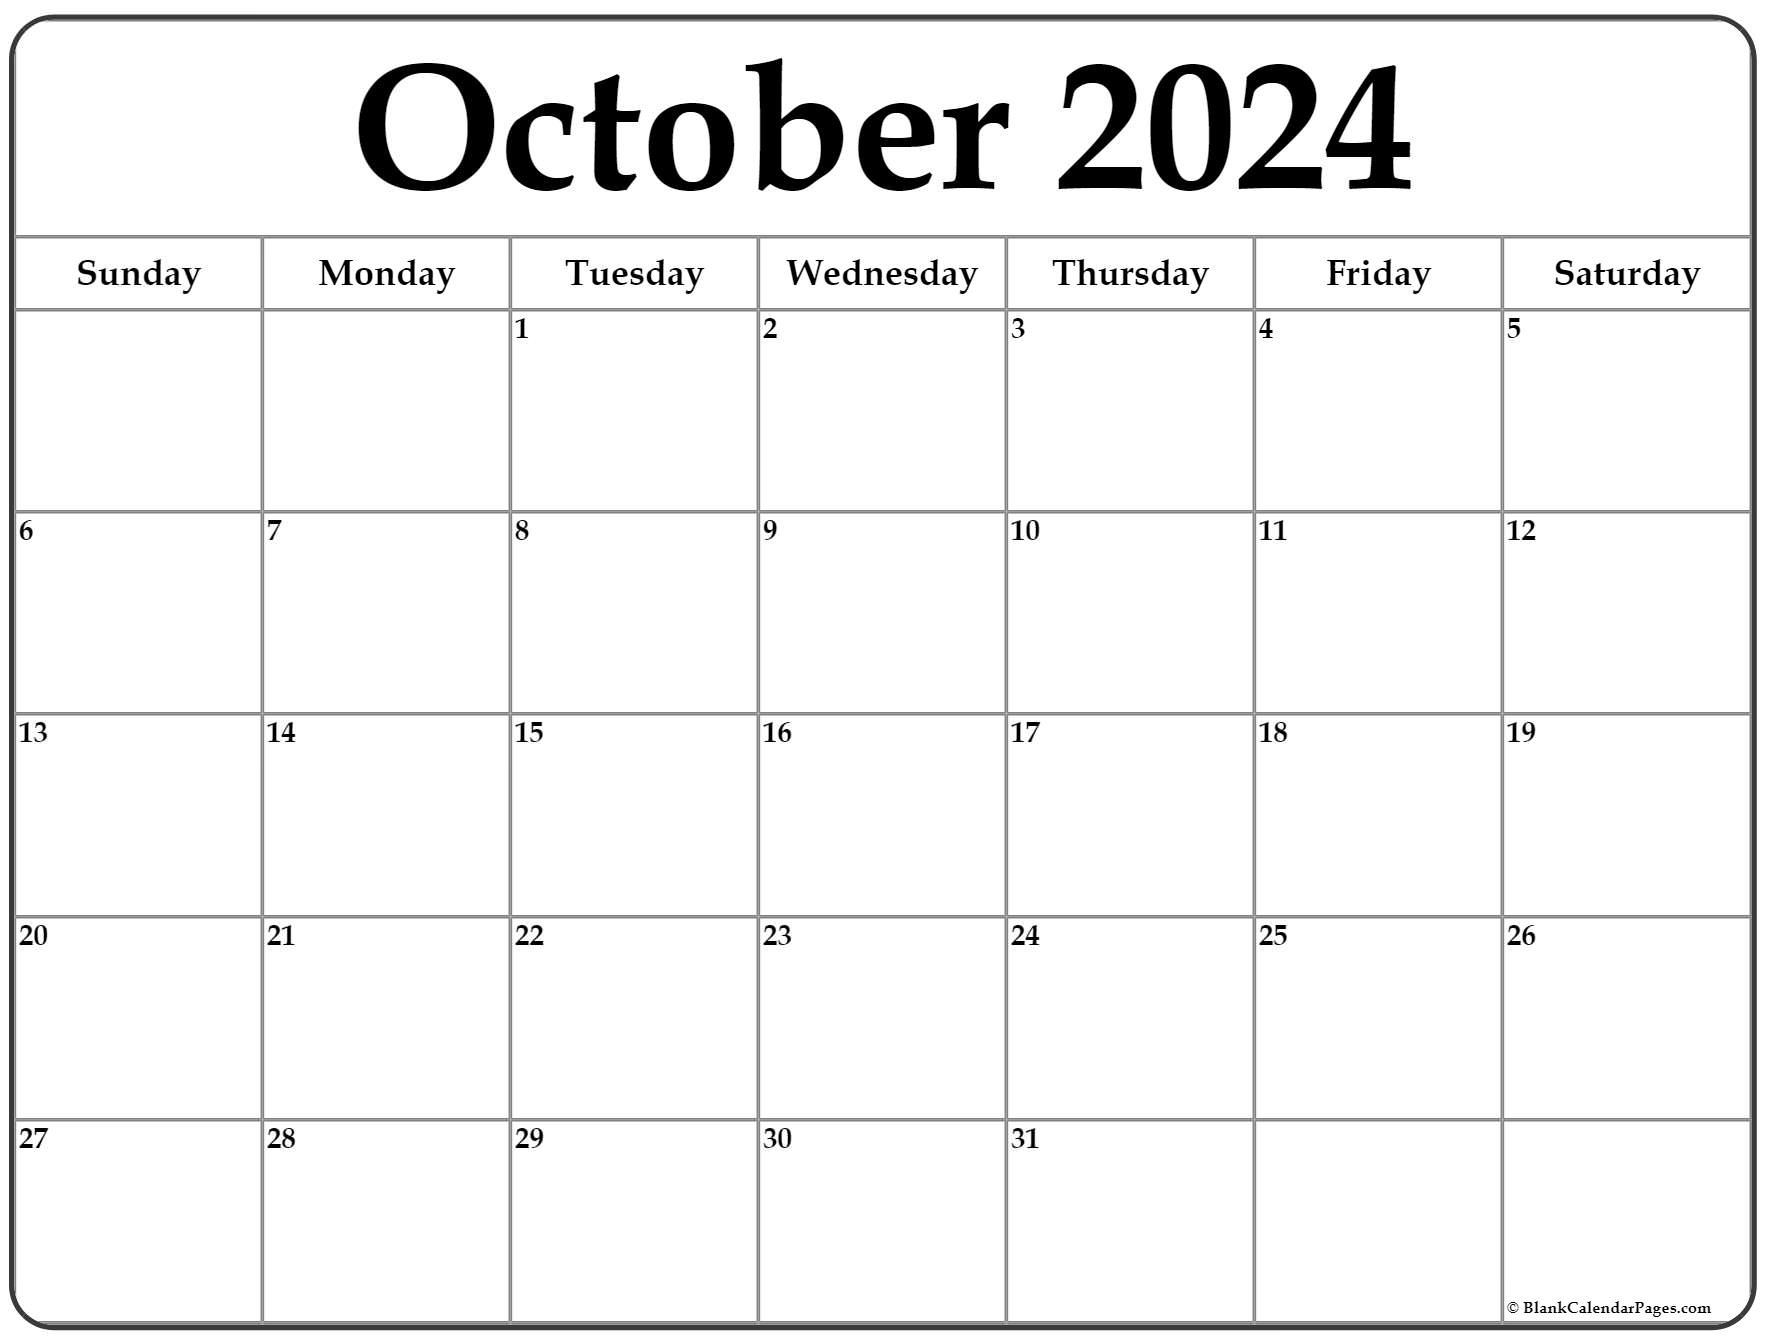 October 2024 Calendar | Free Printable Calendar inside Free Printable Blank October Calendar 2024